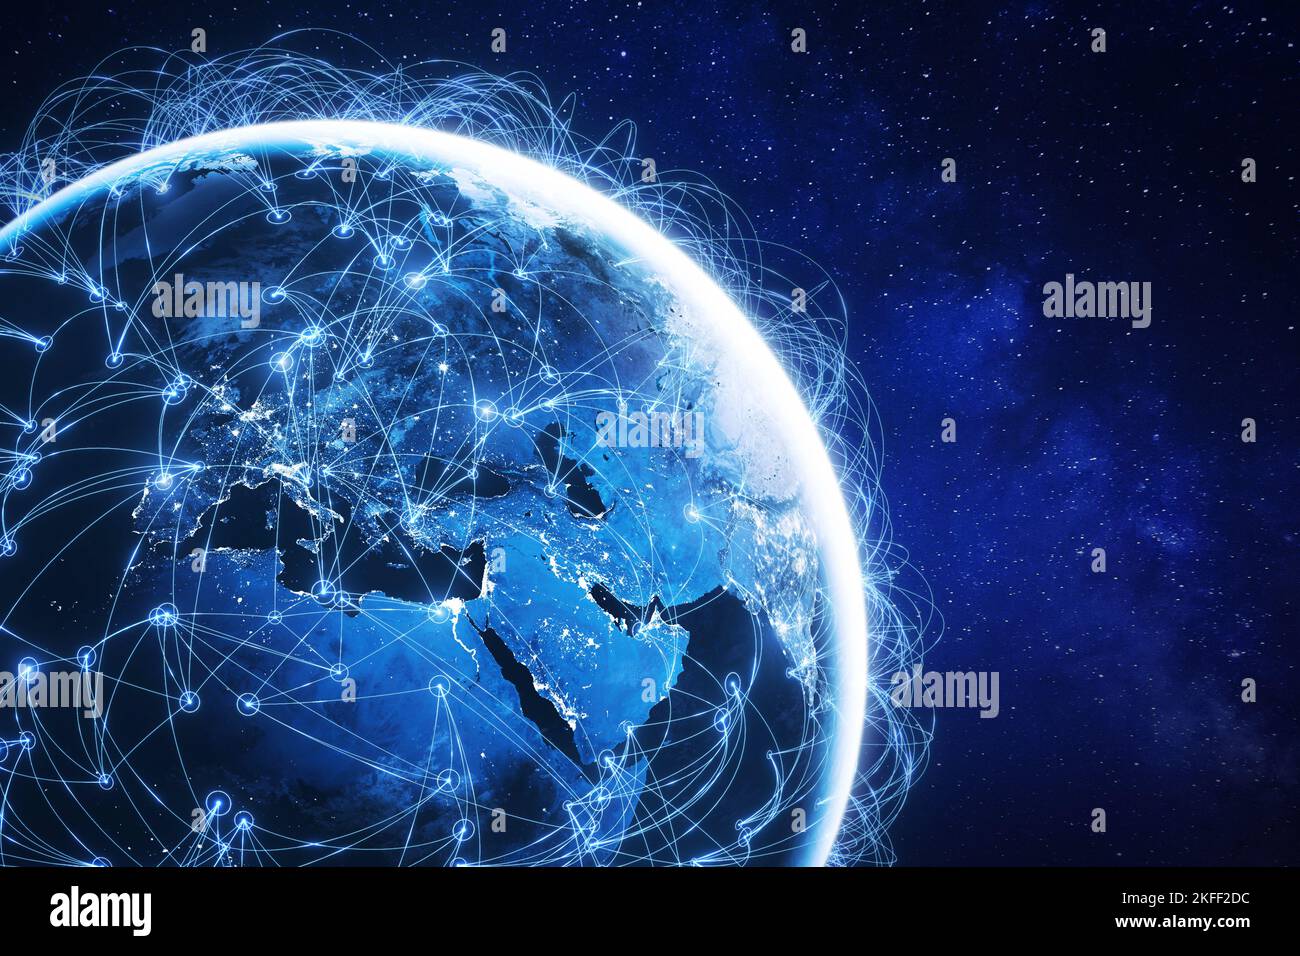 Internet-Technologie mit globalem Kommunikationsnetzwerk weltweit vernetzt für IoT, Telekommunikation, Datenübertragung, internationale Anbindung l Stockfoto